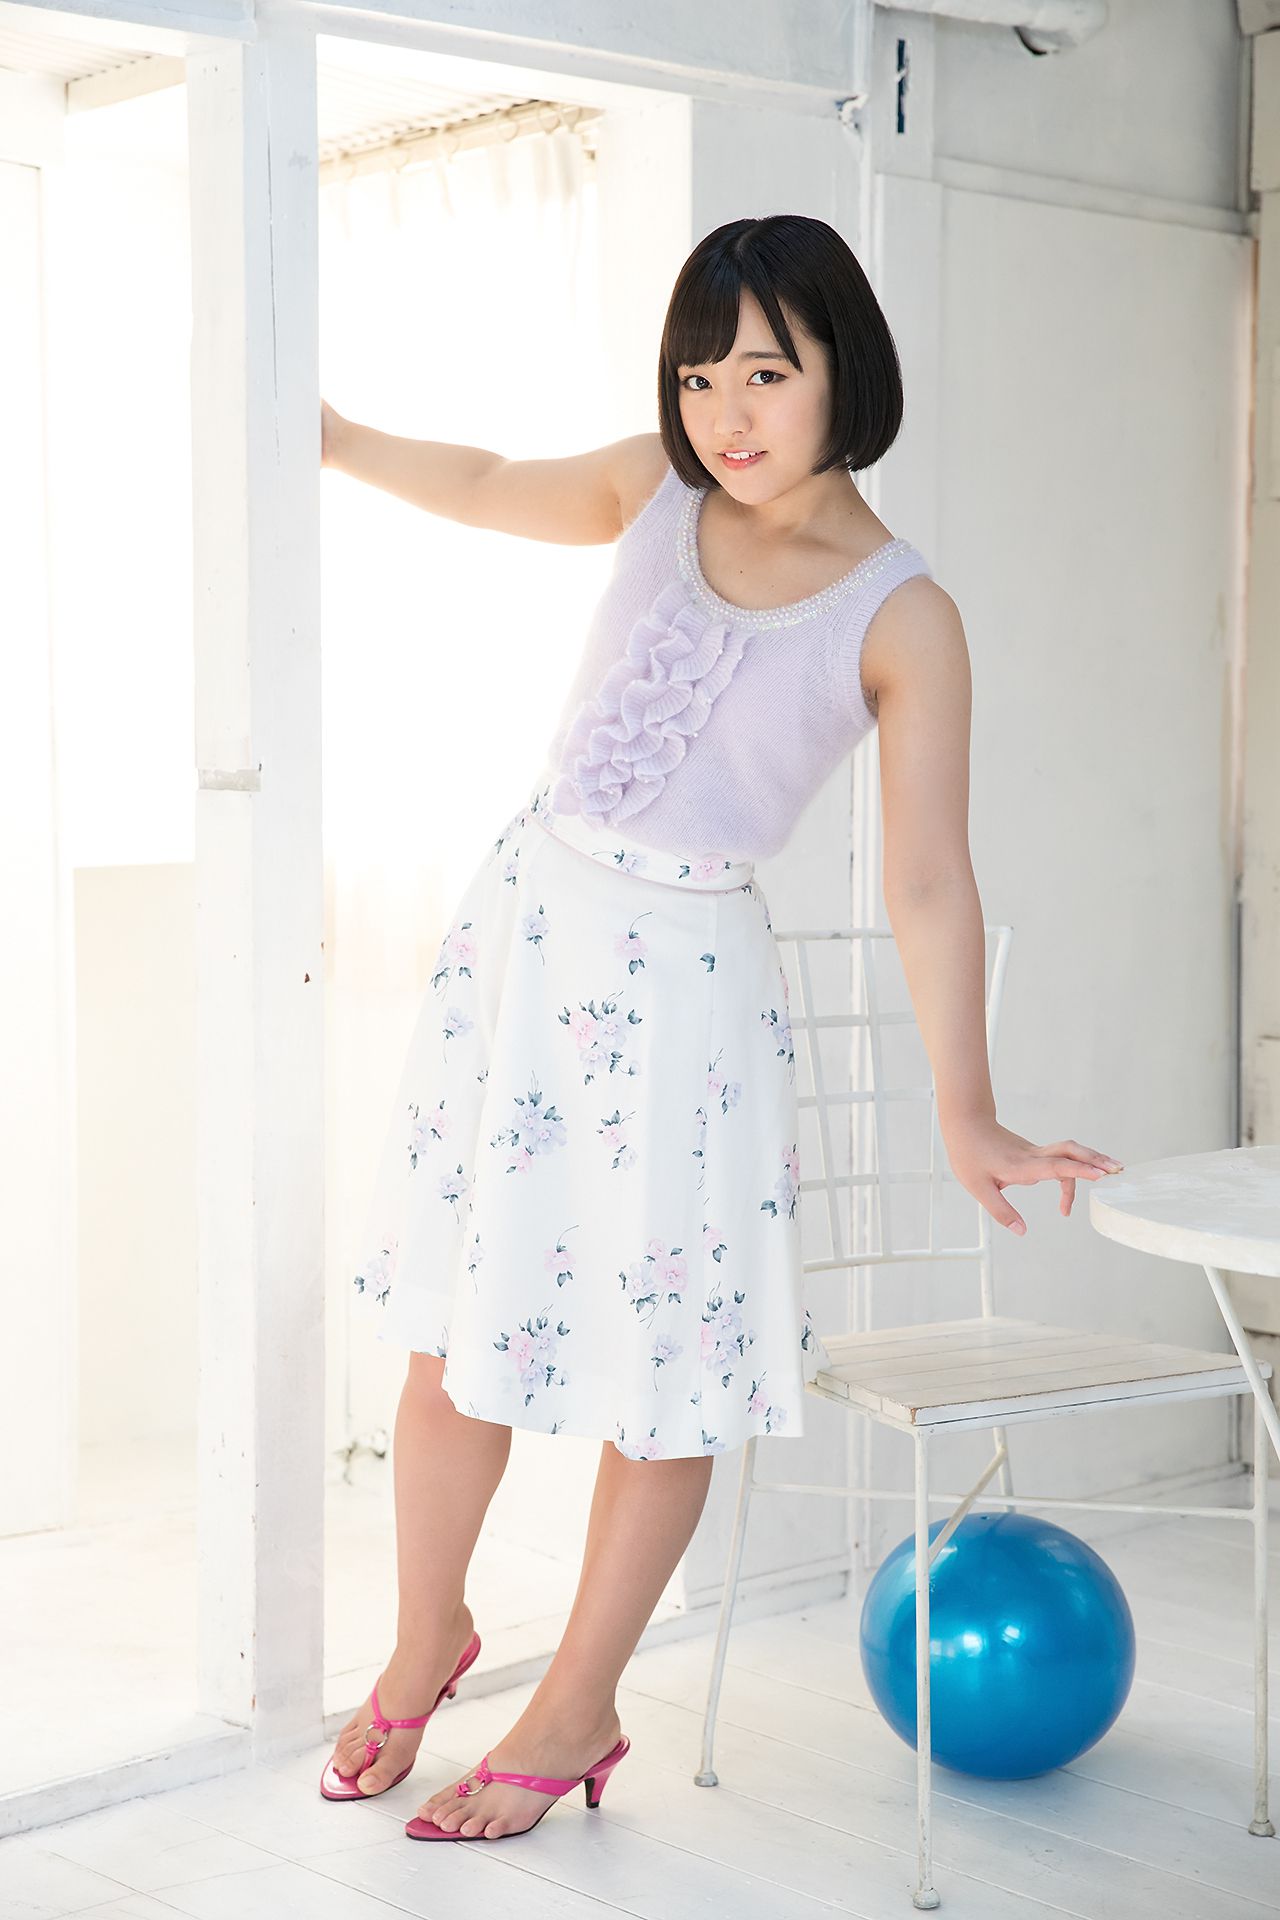 [Minisuka.tv]清纯短发连衣裙:香月杏珠(香月りお)高品质壁纸图片珍藏版(40P)